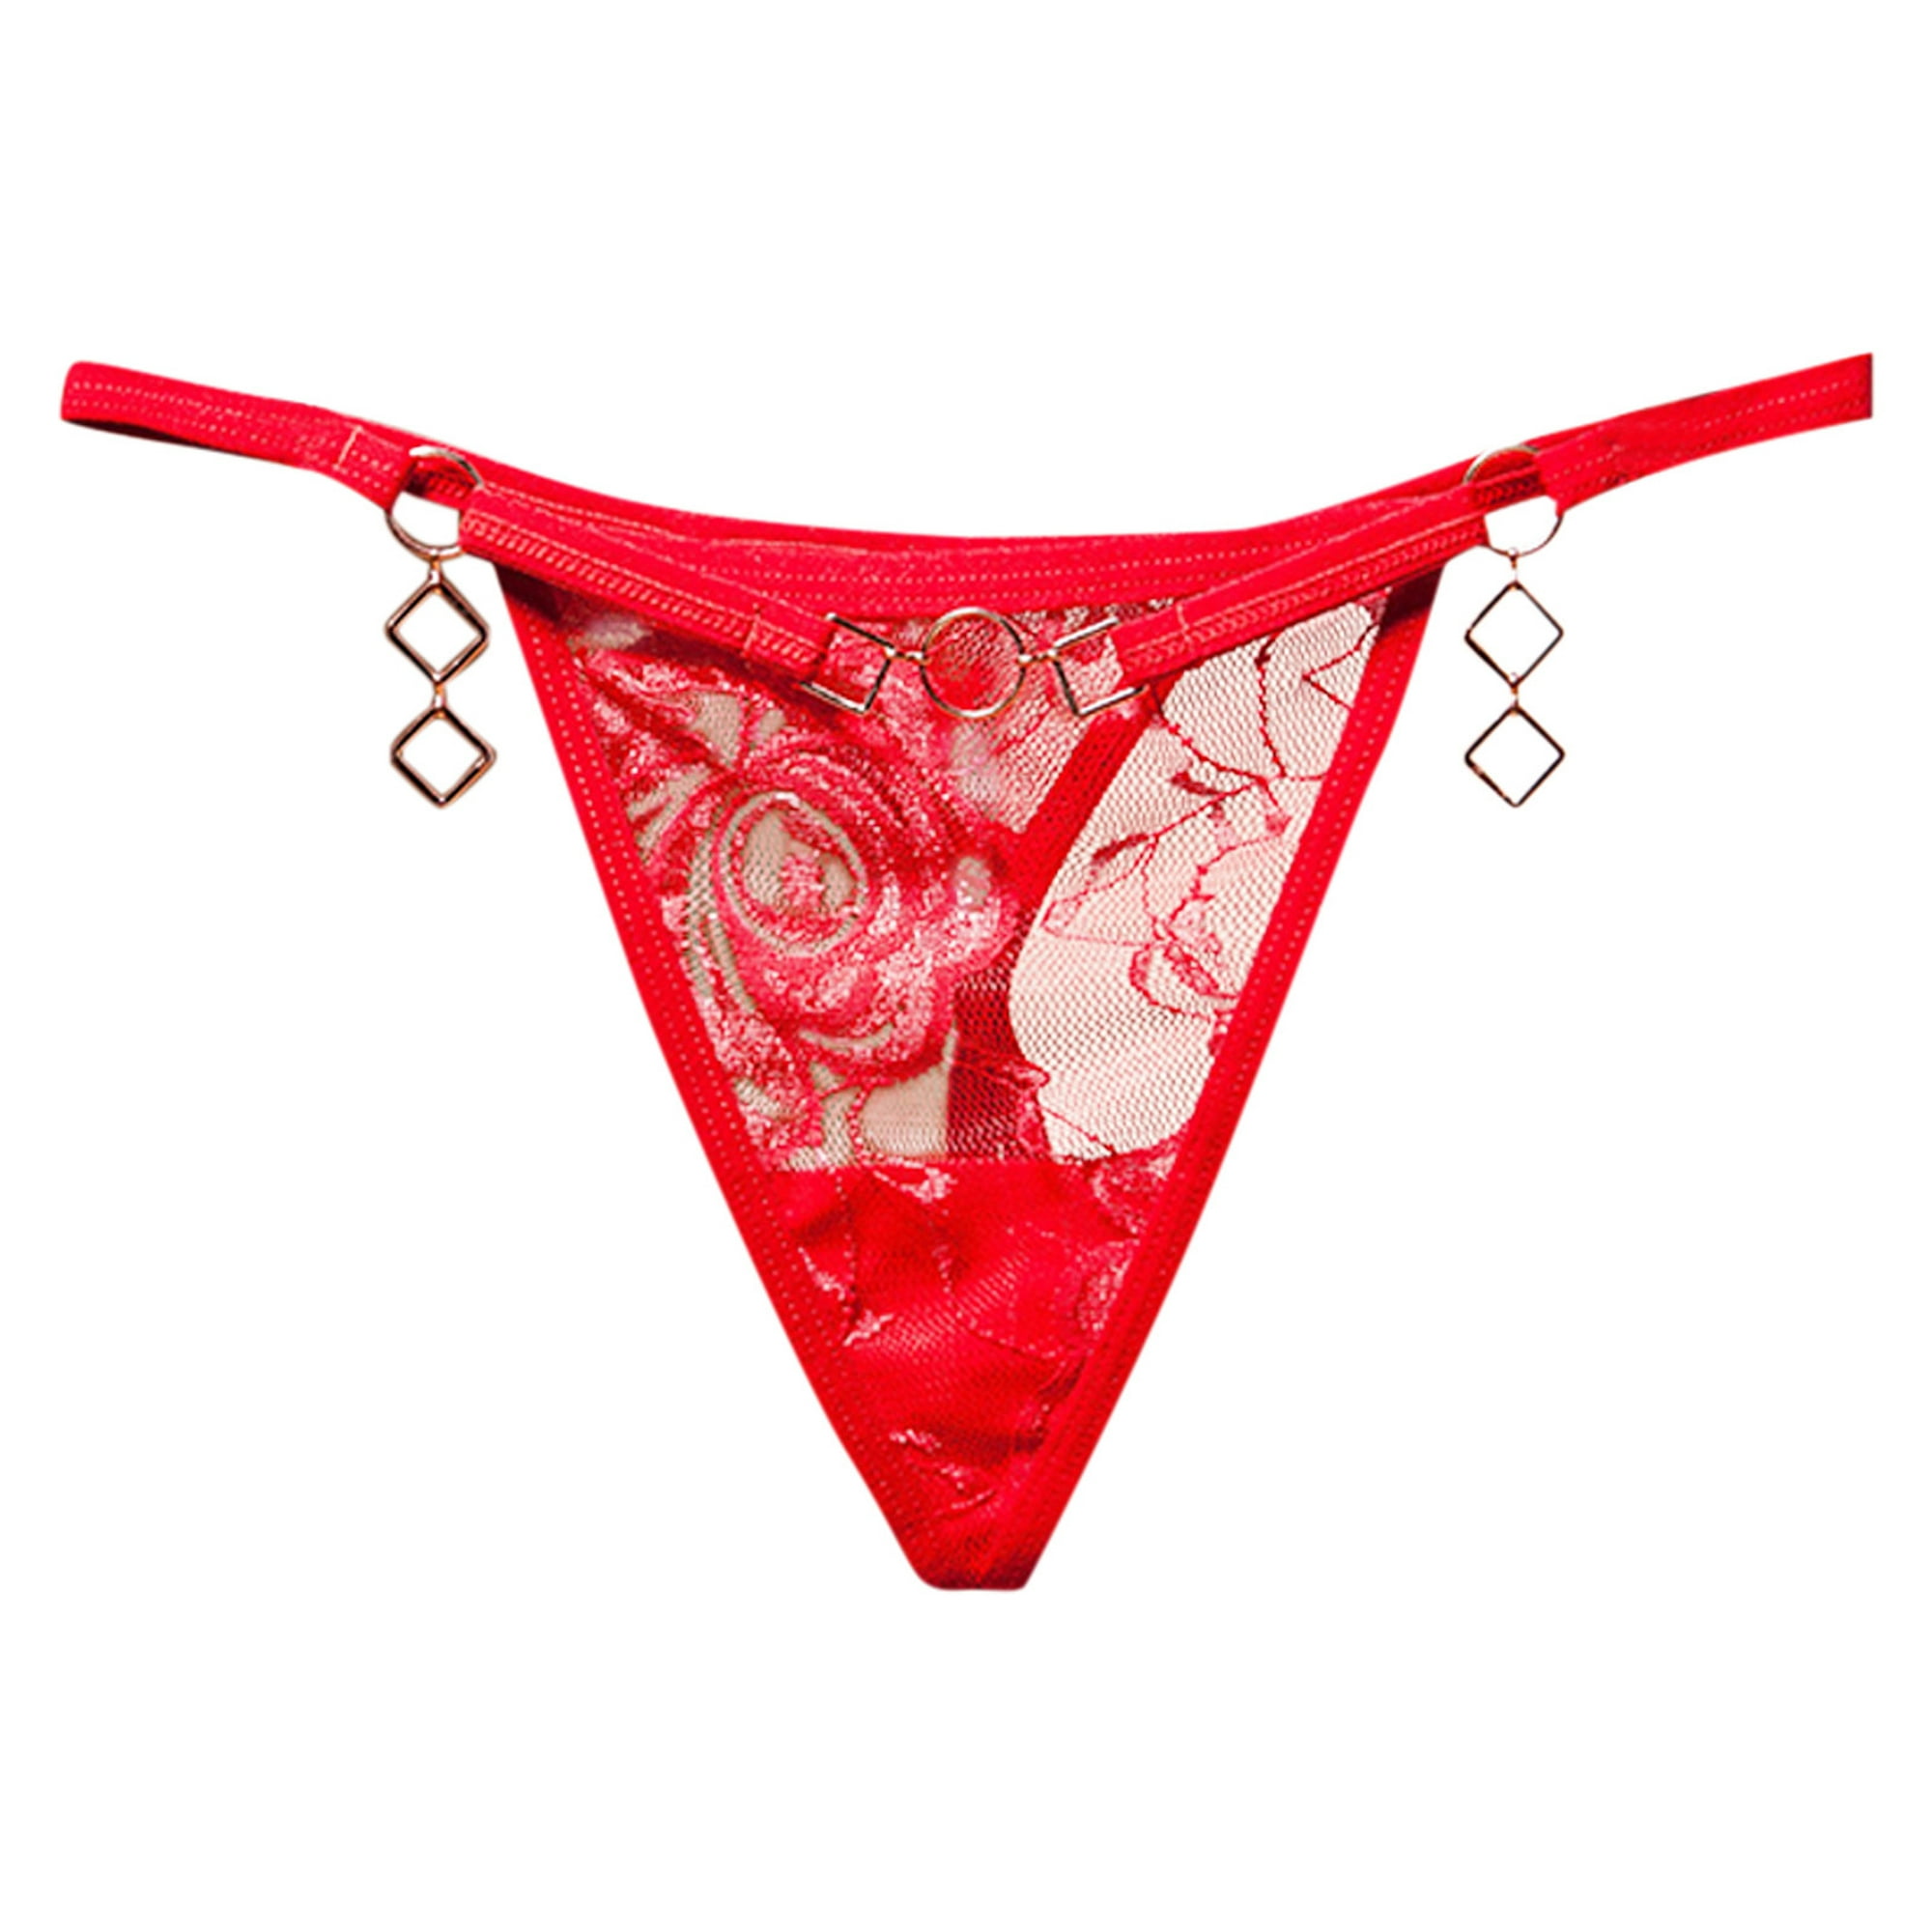  Panties Variety Pack Leak Proof Underwear For Women